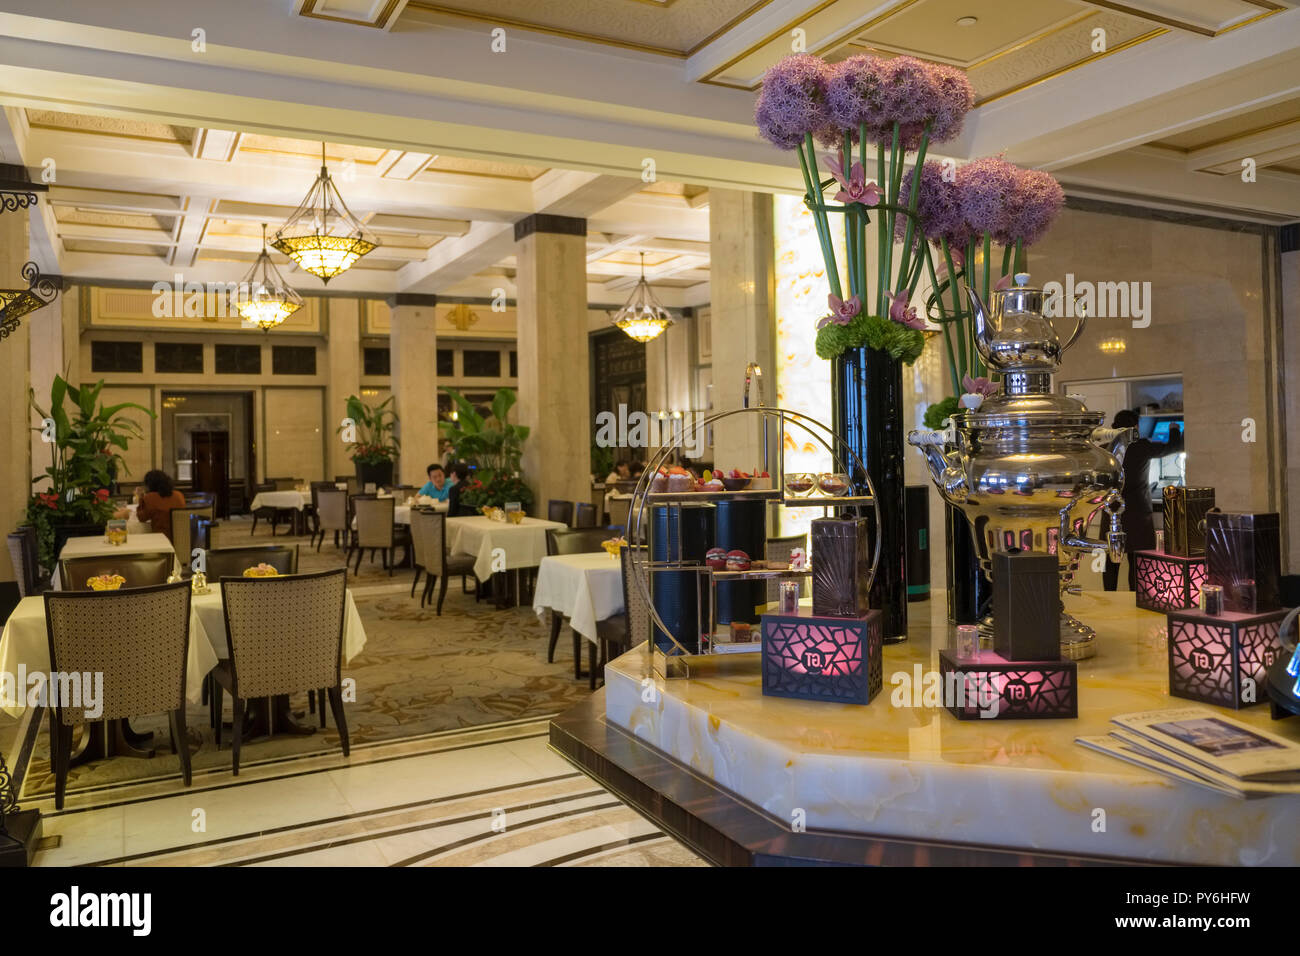 Le thé de l'après-midi à l'intérieur de l'hôtel Fairmont Peace Hotel à Shanghai, Chine, Asie Banque D'Images